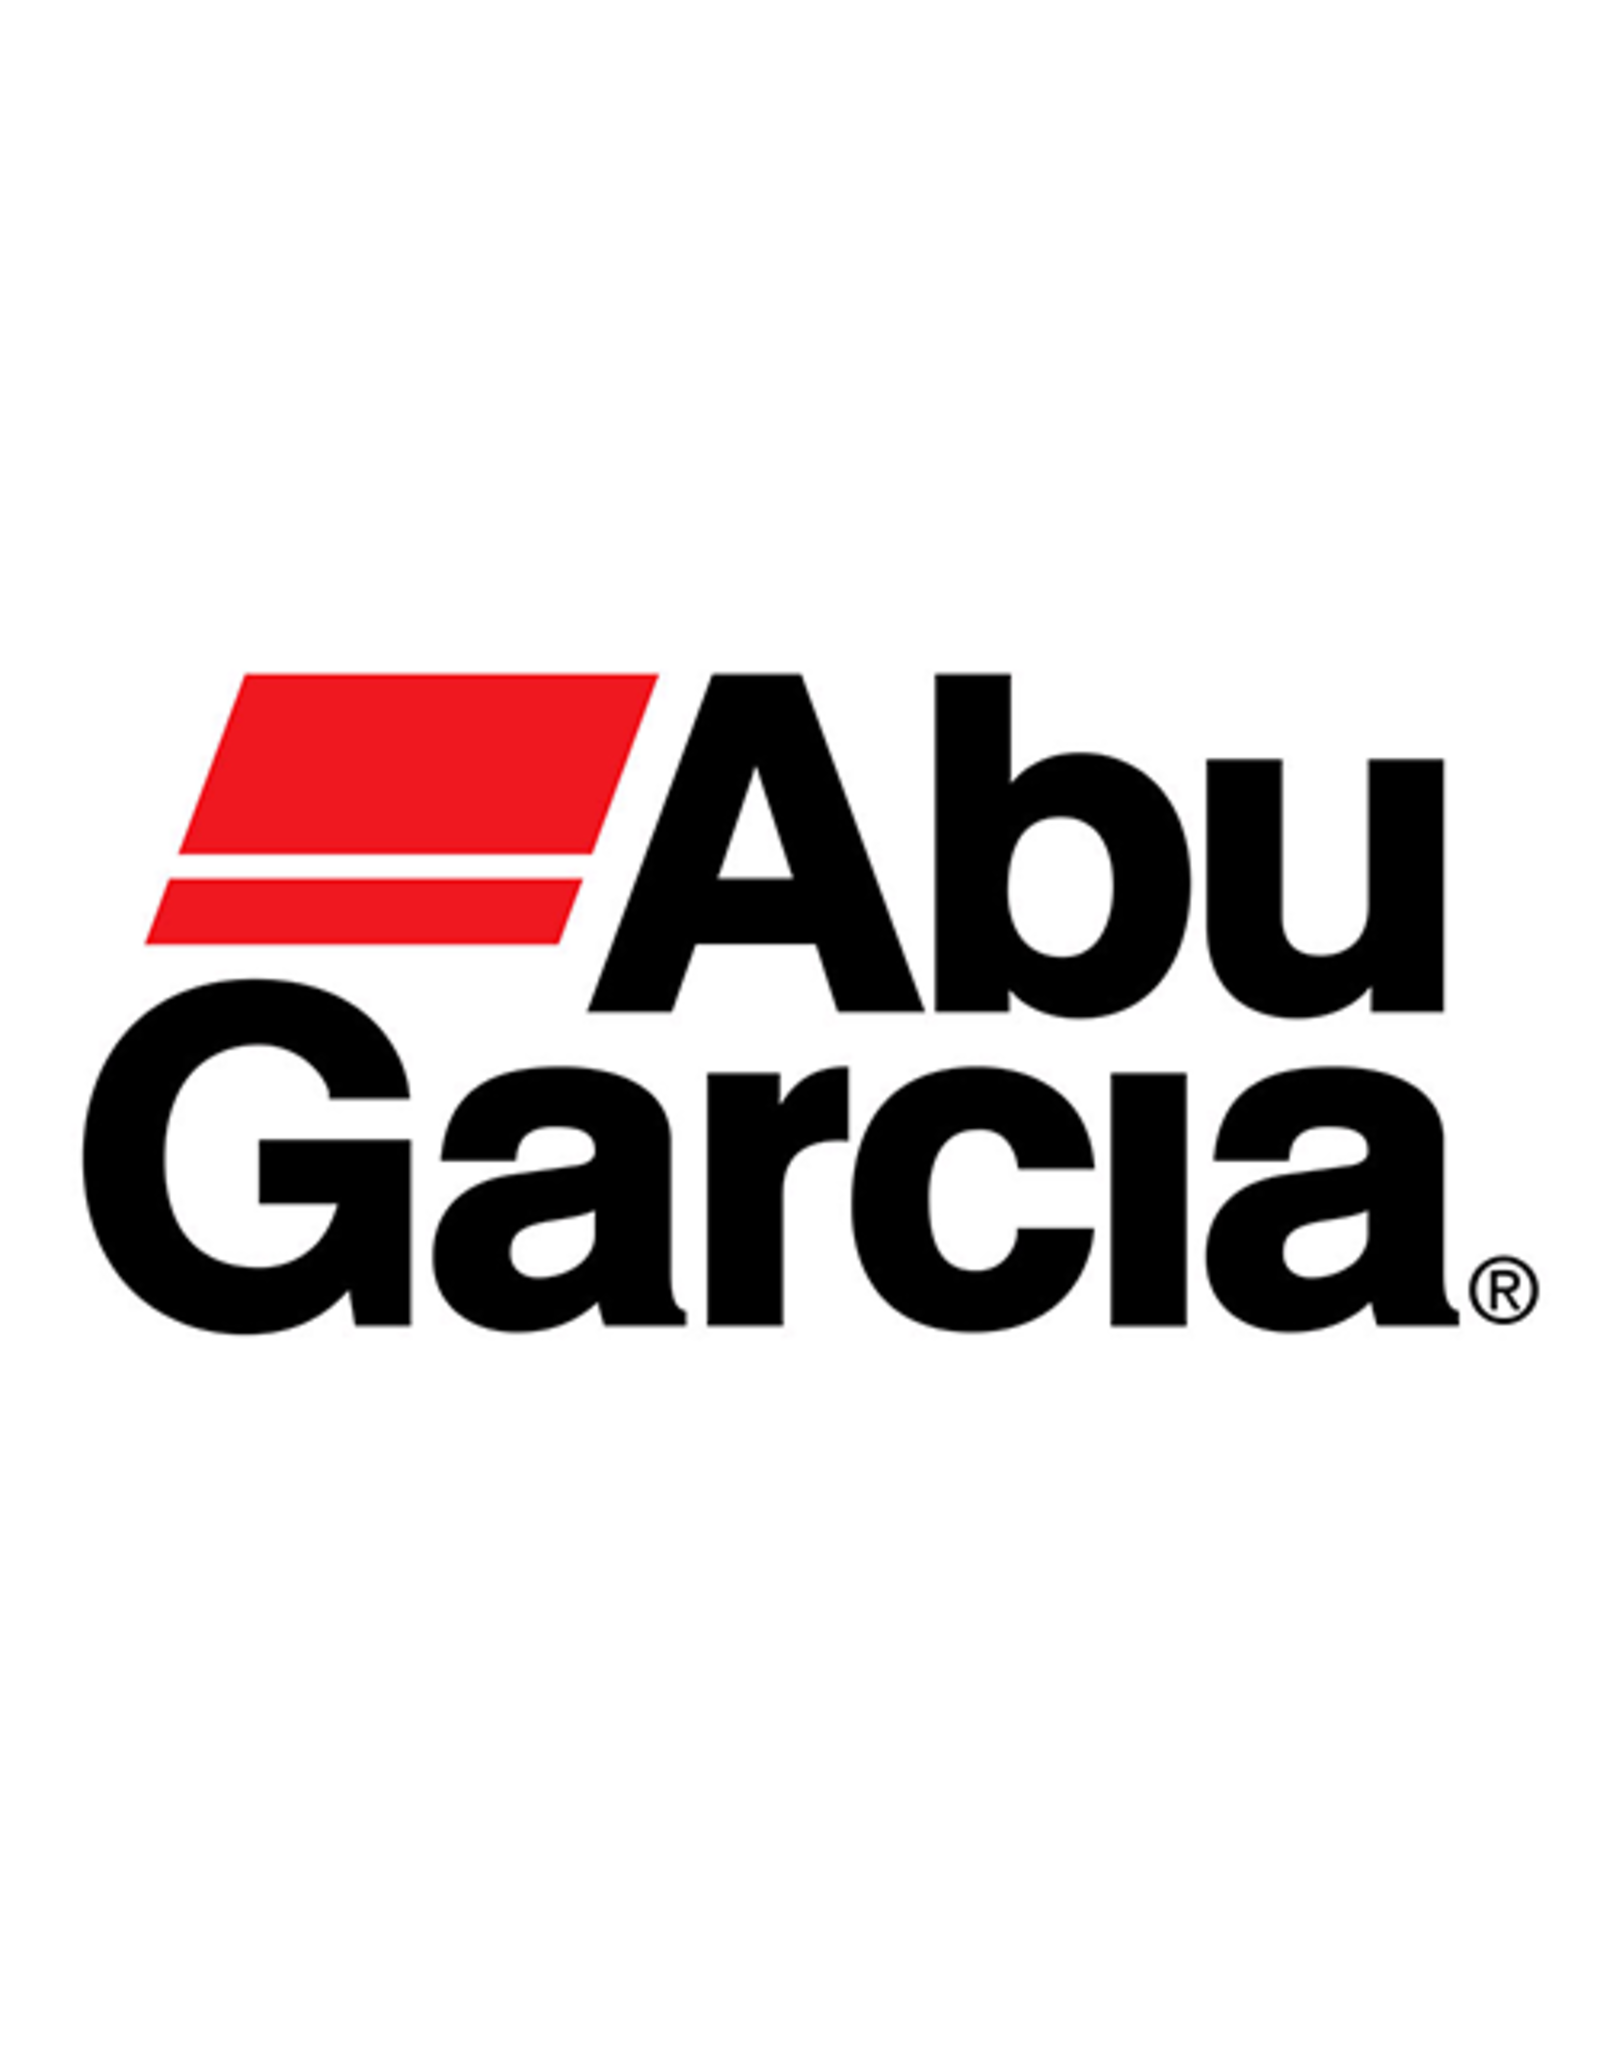 Abu Garcia 1281250  PINION